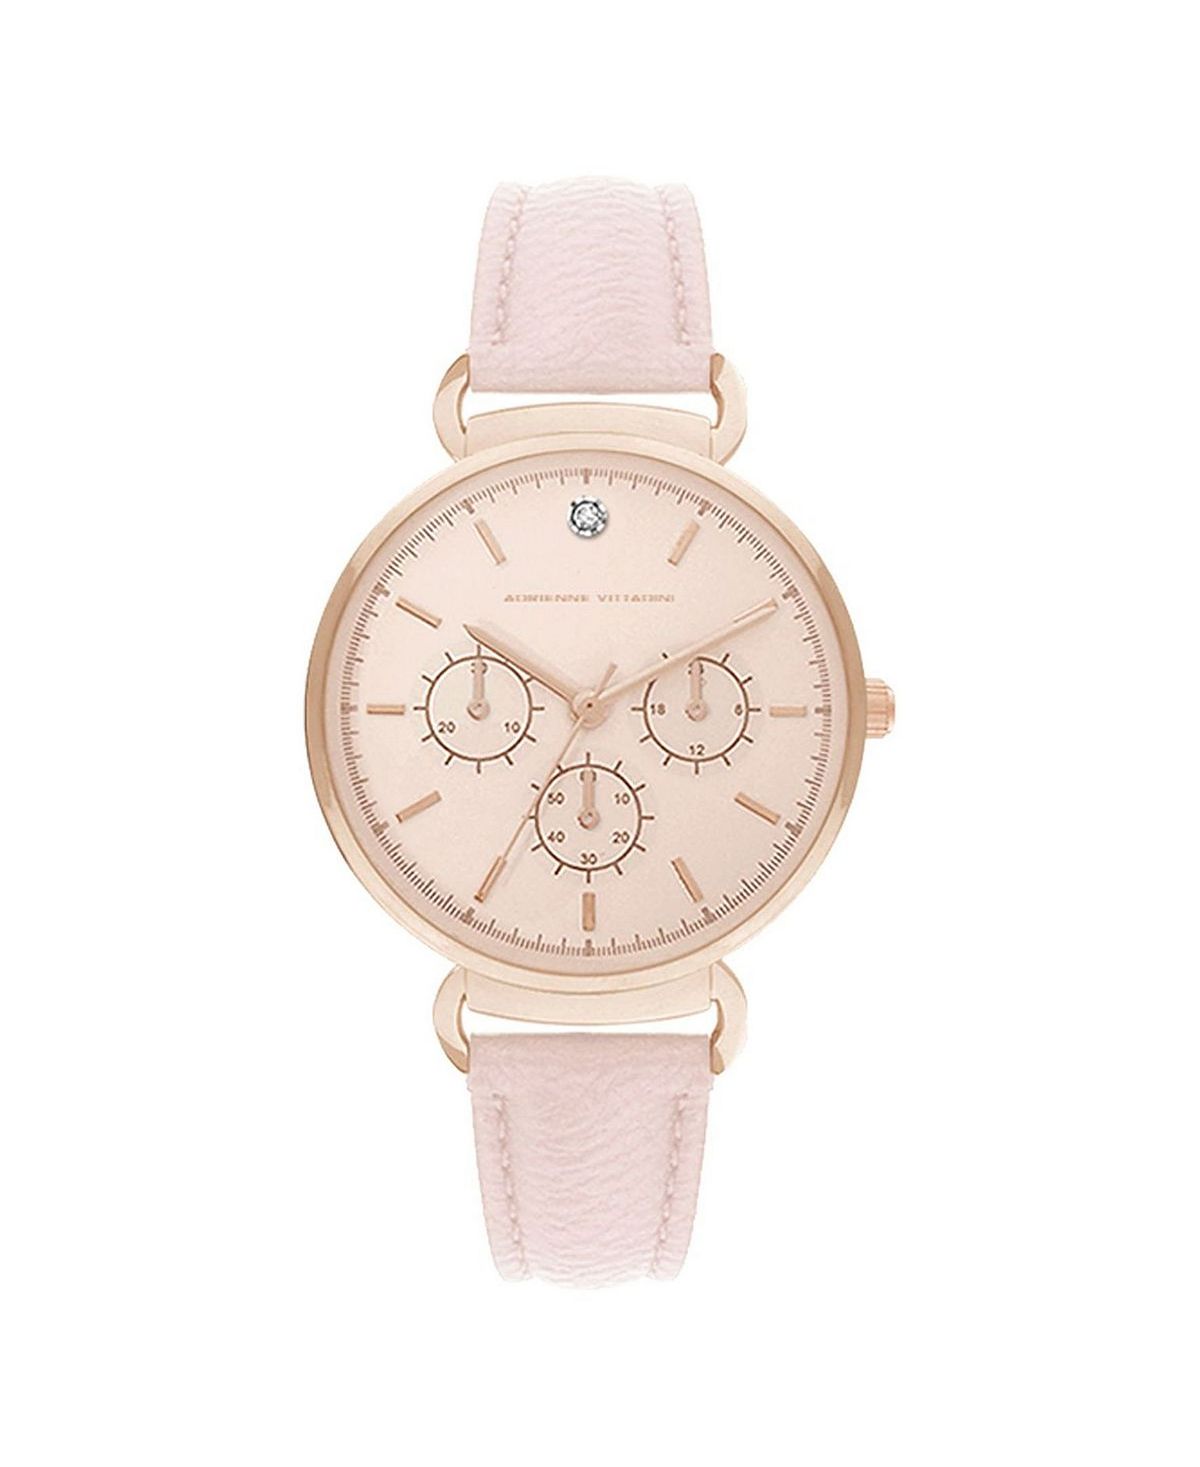 цена Женские часы с хронографом и румяным кожаным ремешком, 36 мм Adrienne Vittadini